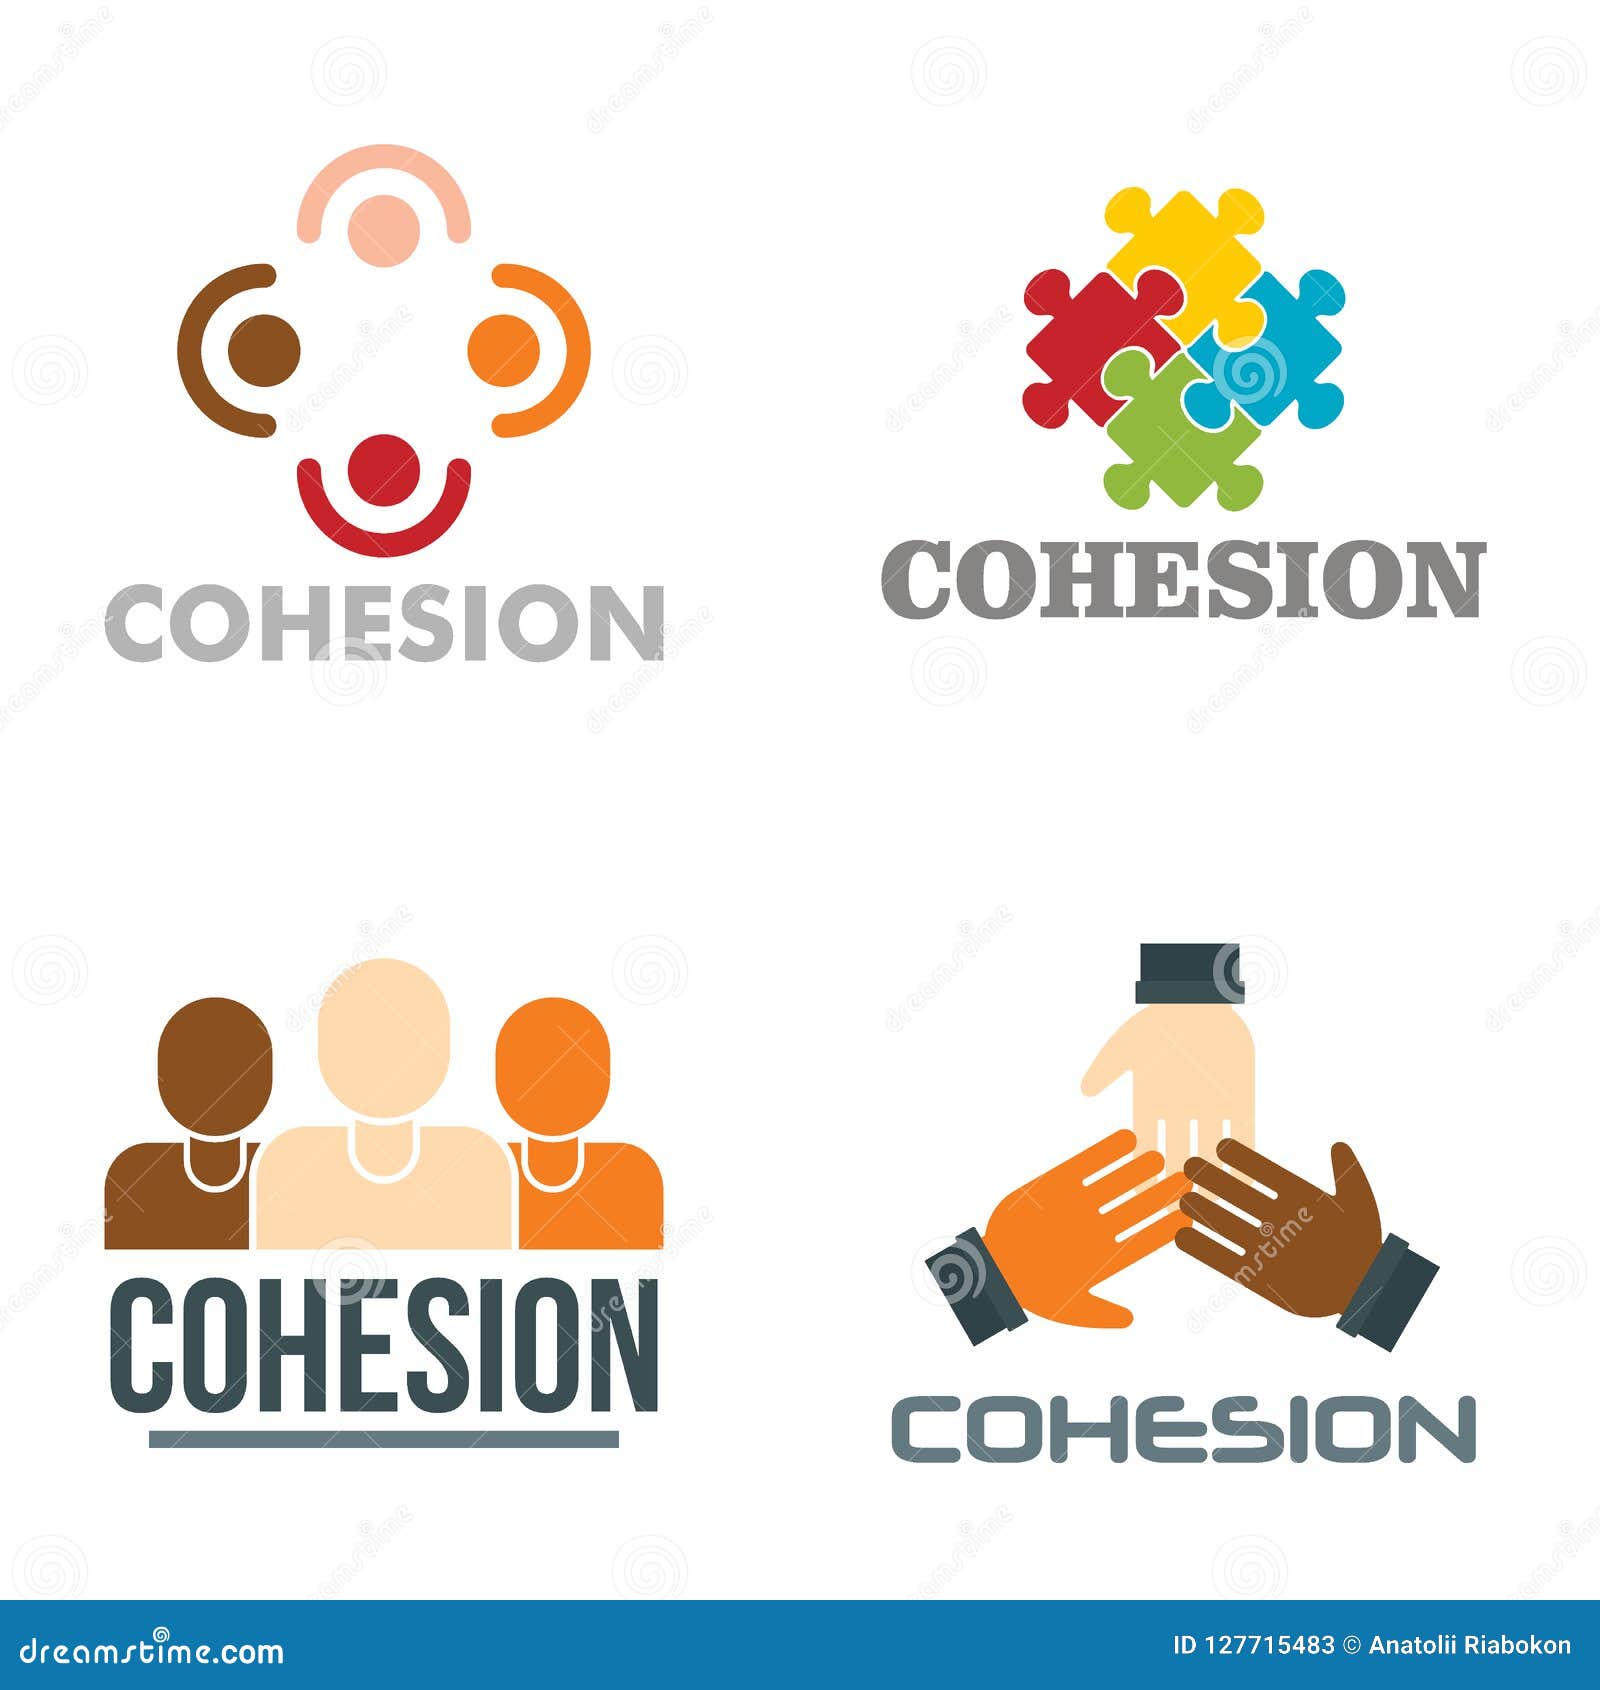 cohesion logo set, flat style